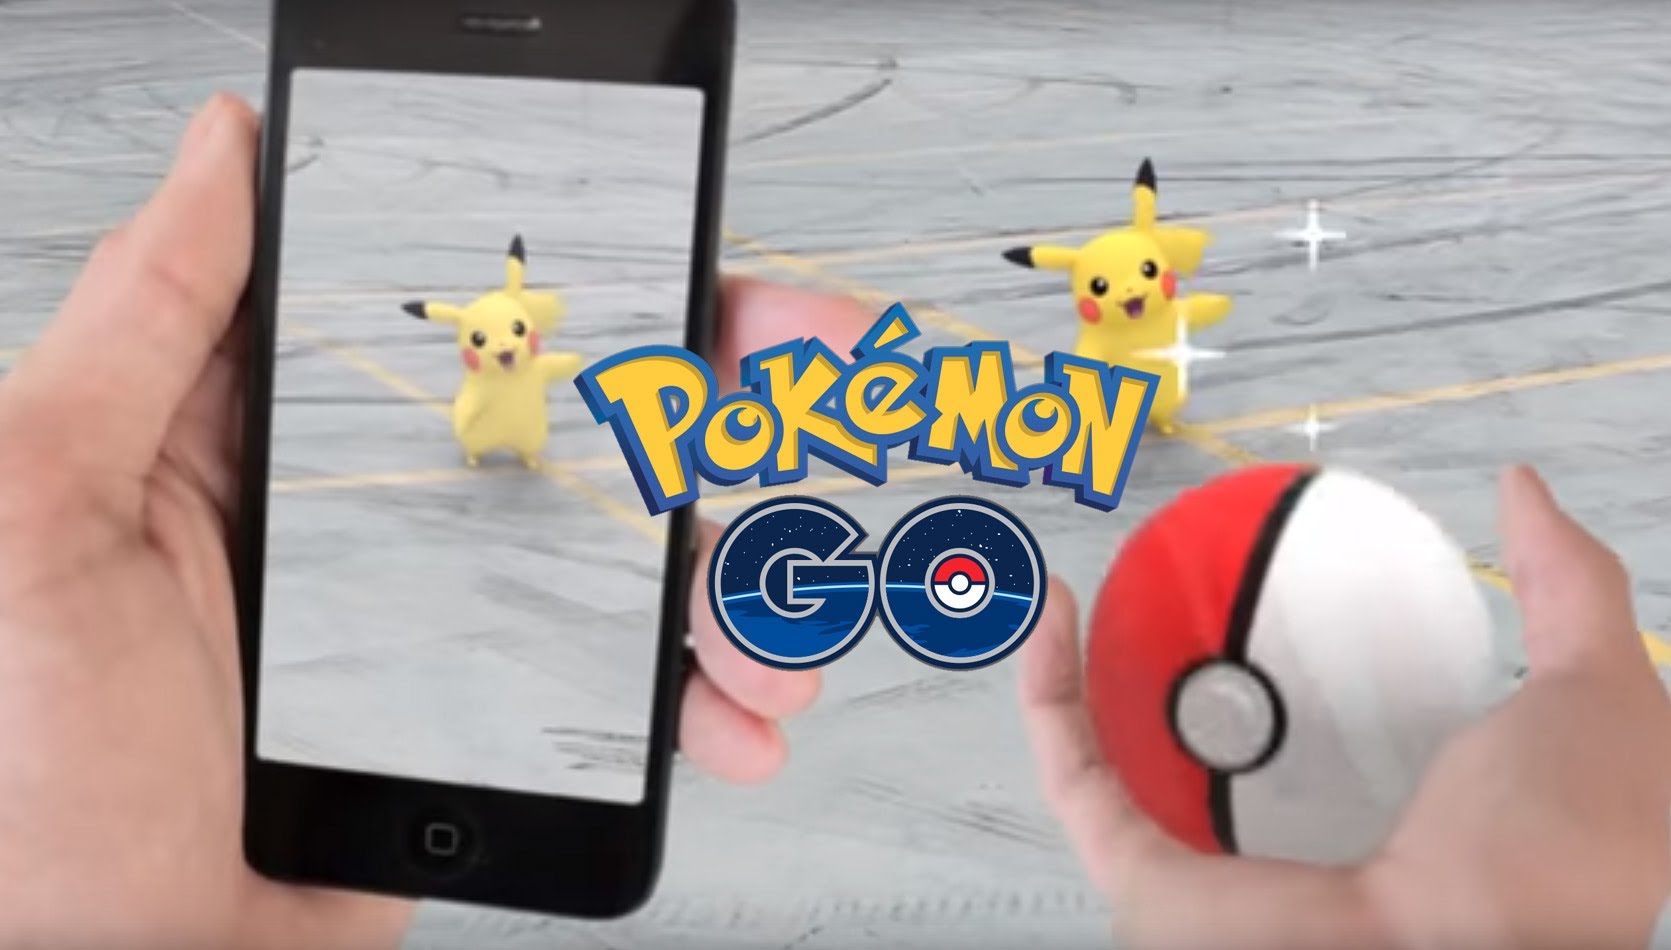 Pokémon Go screen